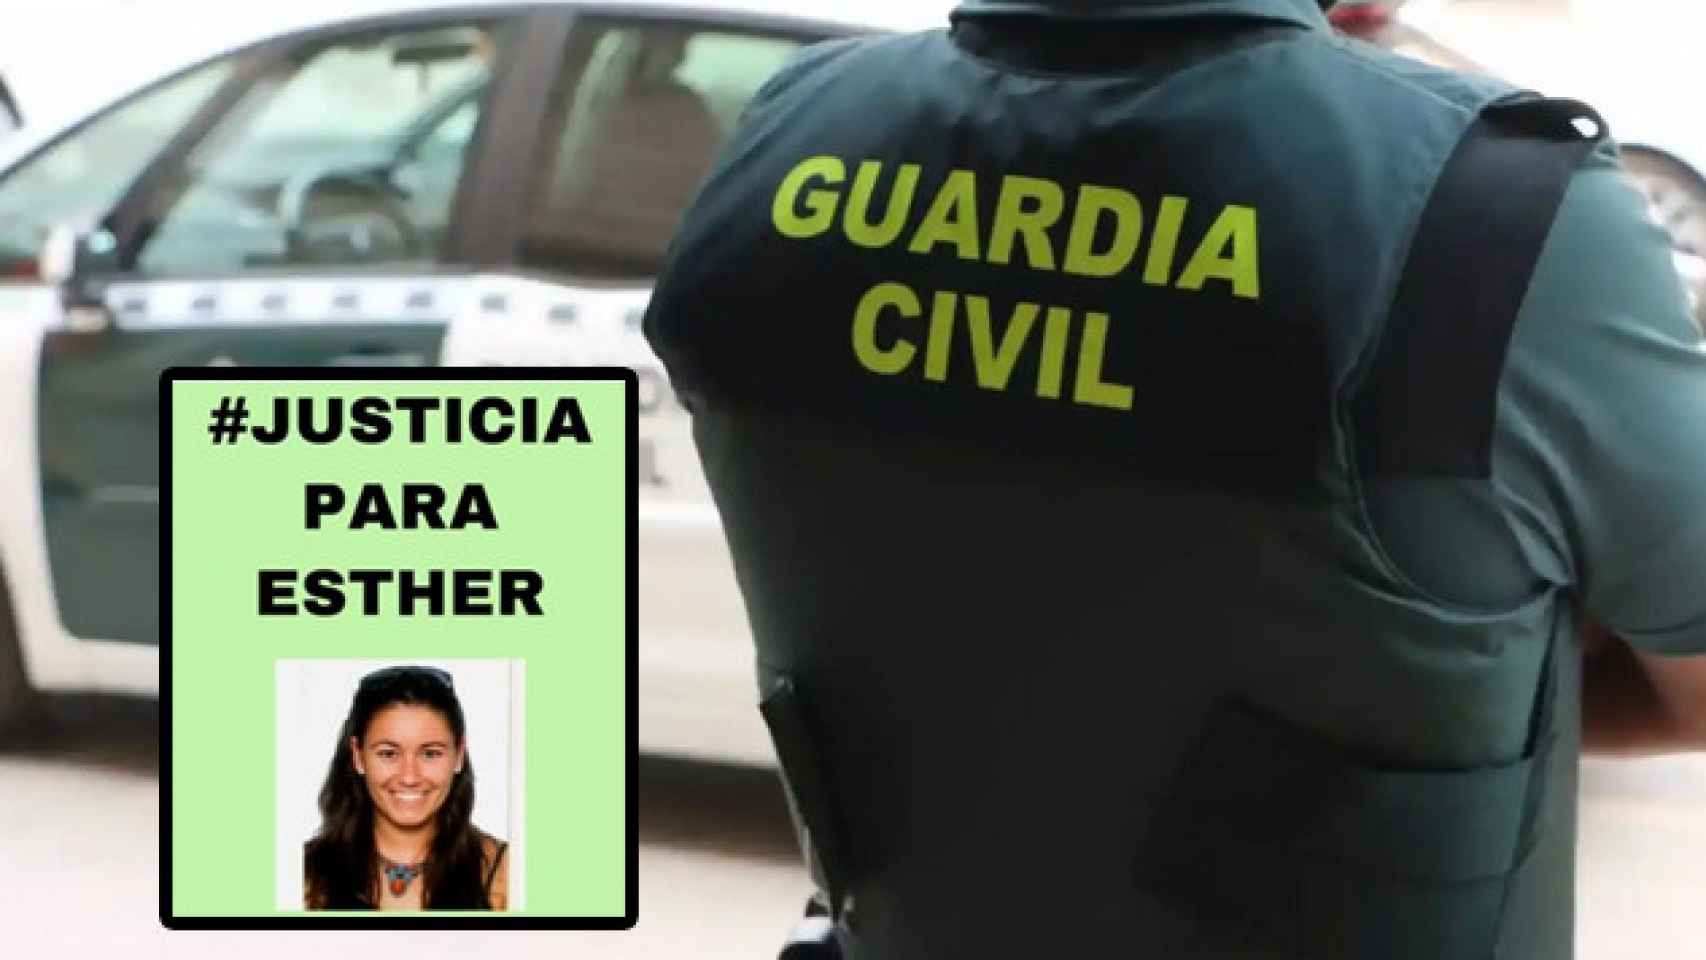 El cartel de 'Justicia para Esther' y un agente de la Guardia Civil